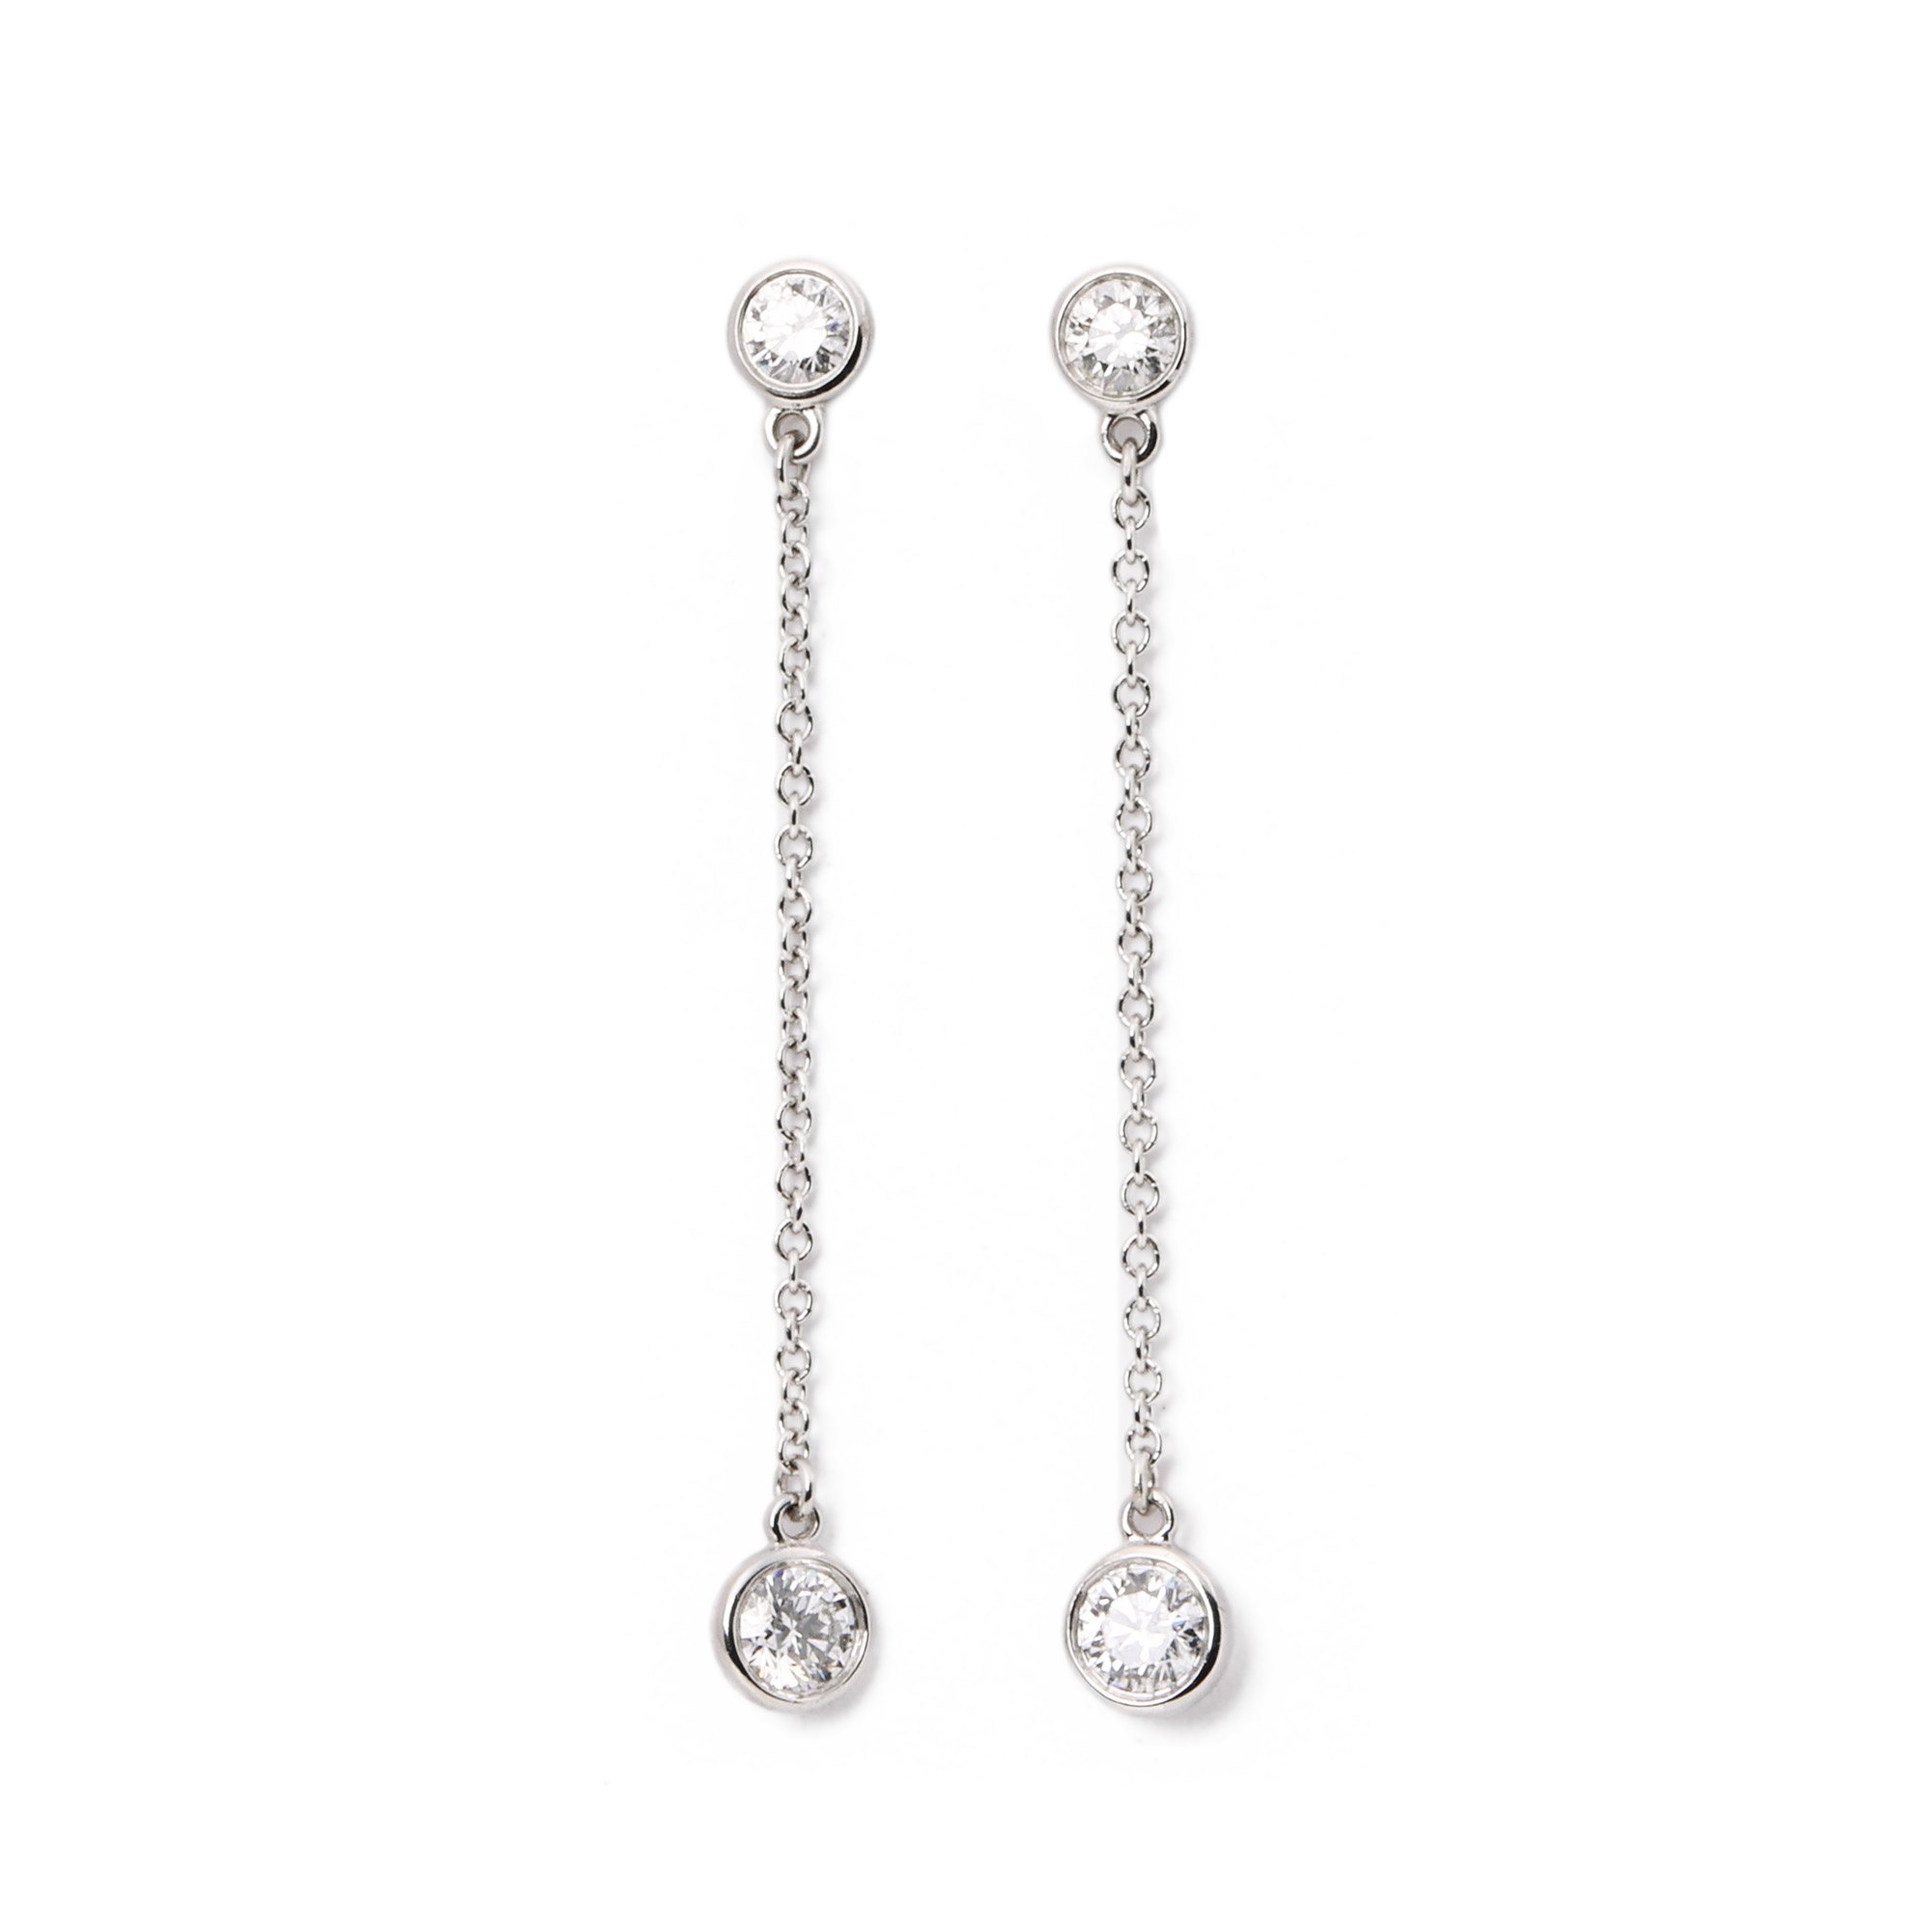 Tiffany & Co. Diamonds by the Yard drop earrings